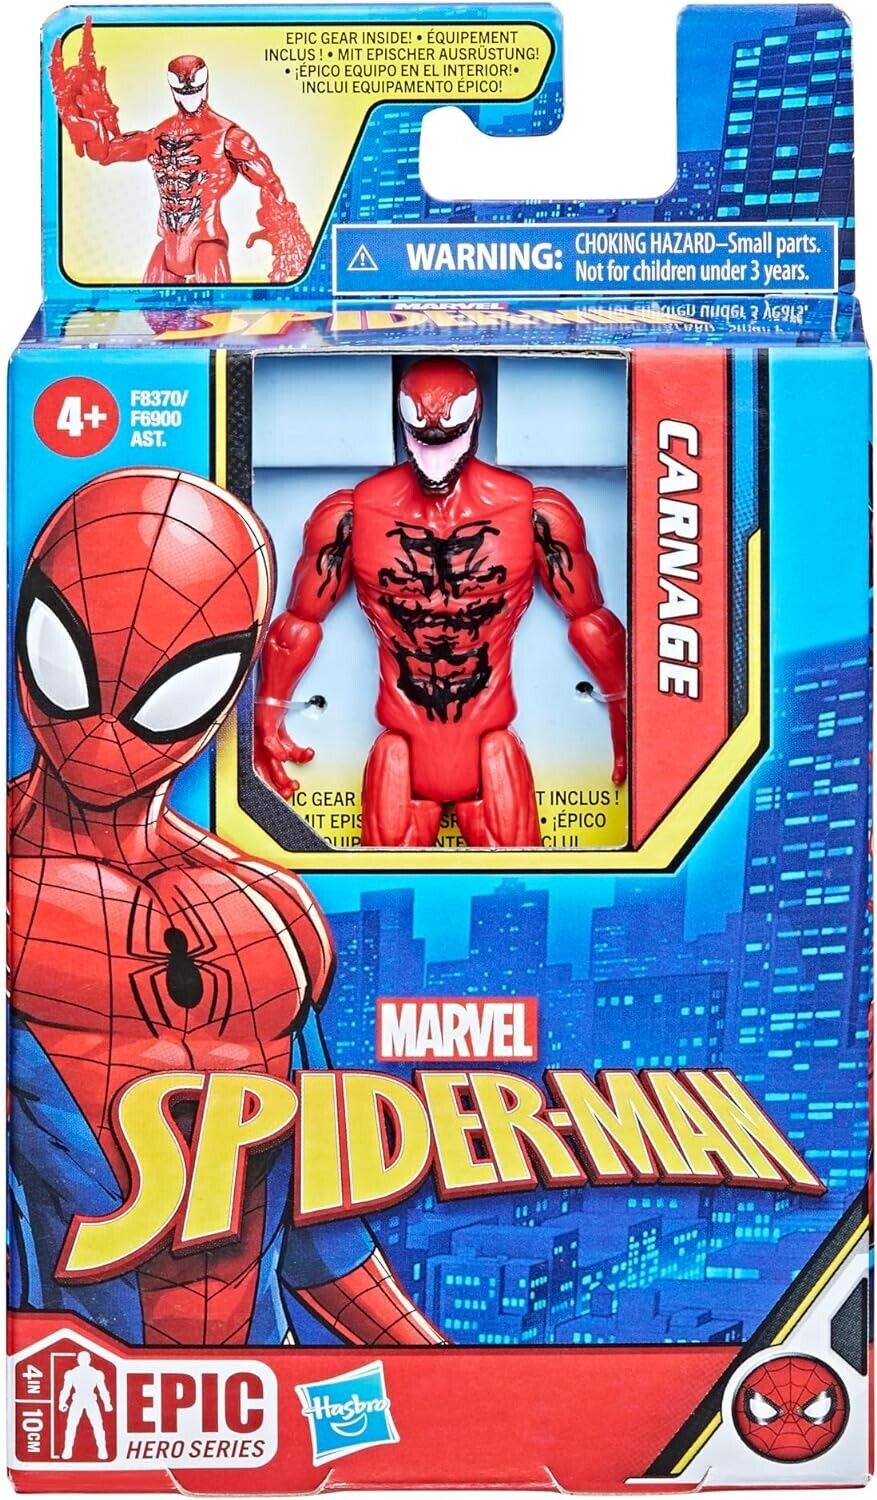 Spider-Man - Epic Hero Series - Carnage (F8370)